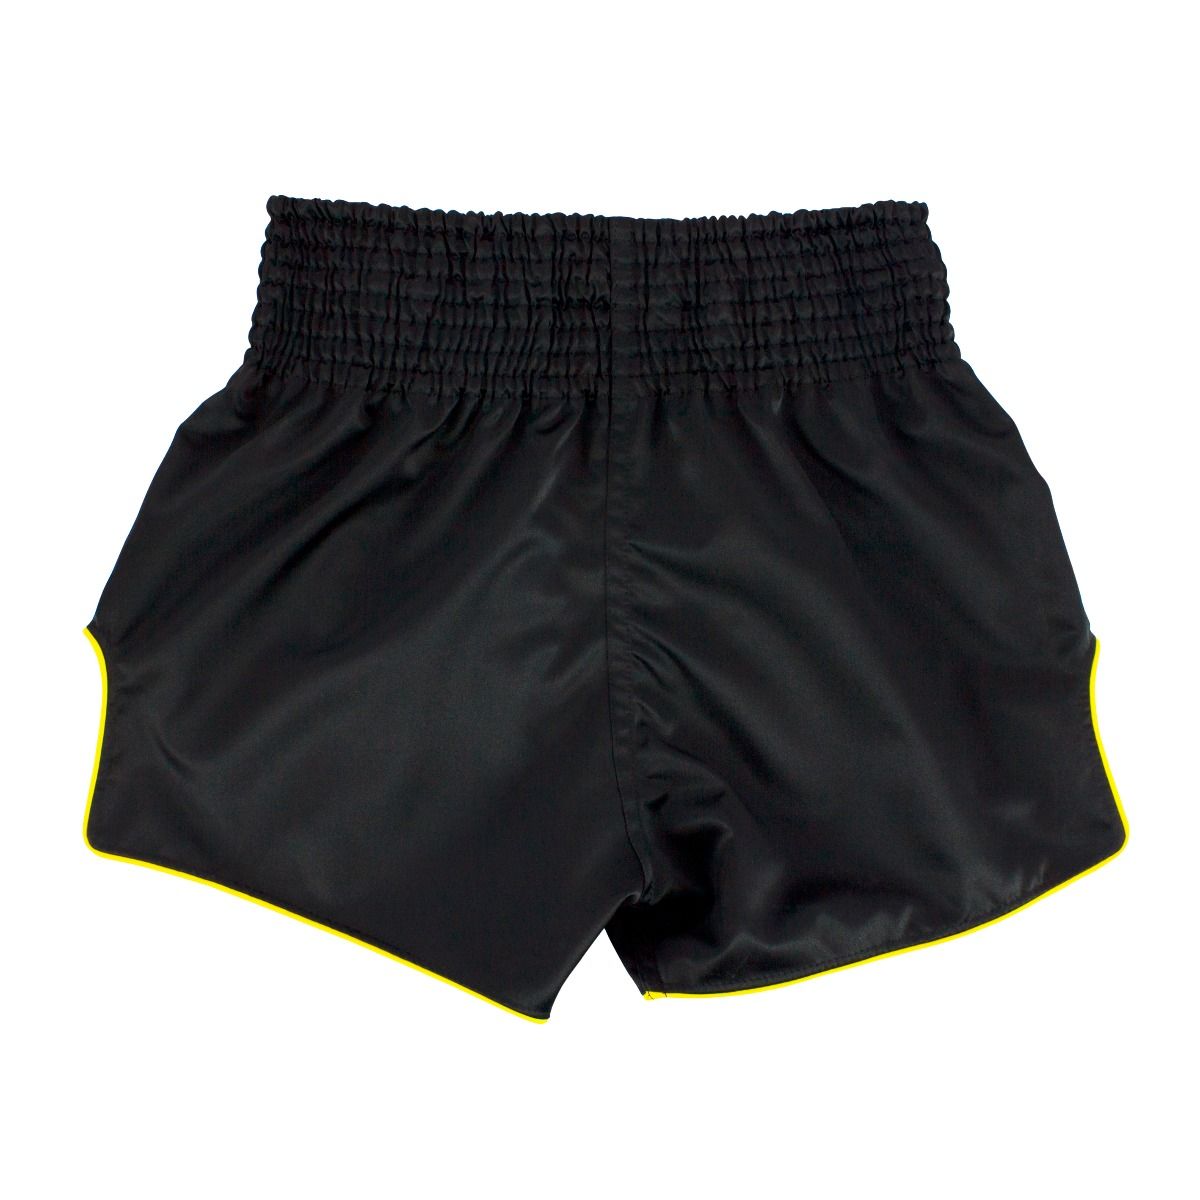 FAIRTEX Slim Cut Muaythai Shorts BS1903